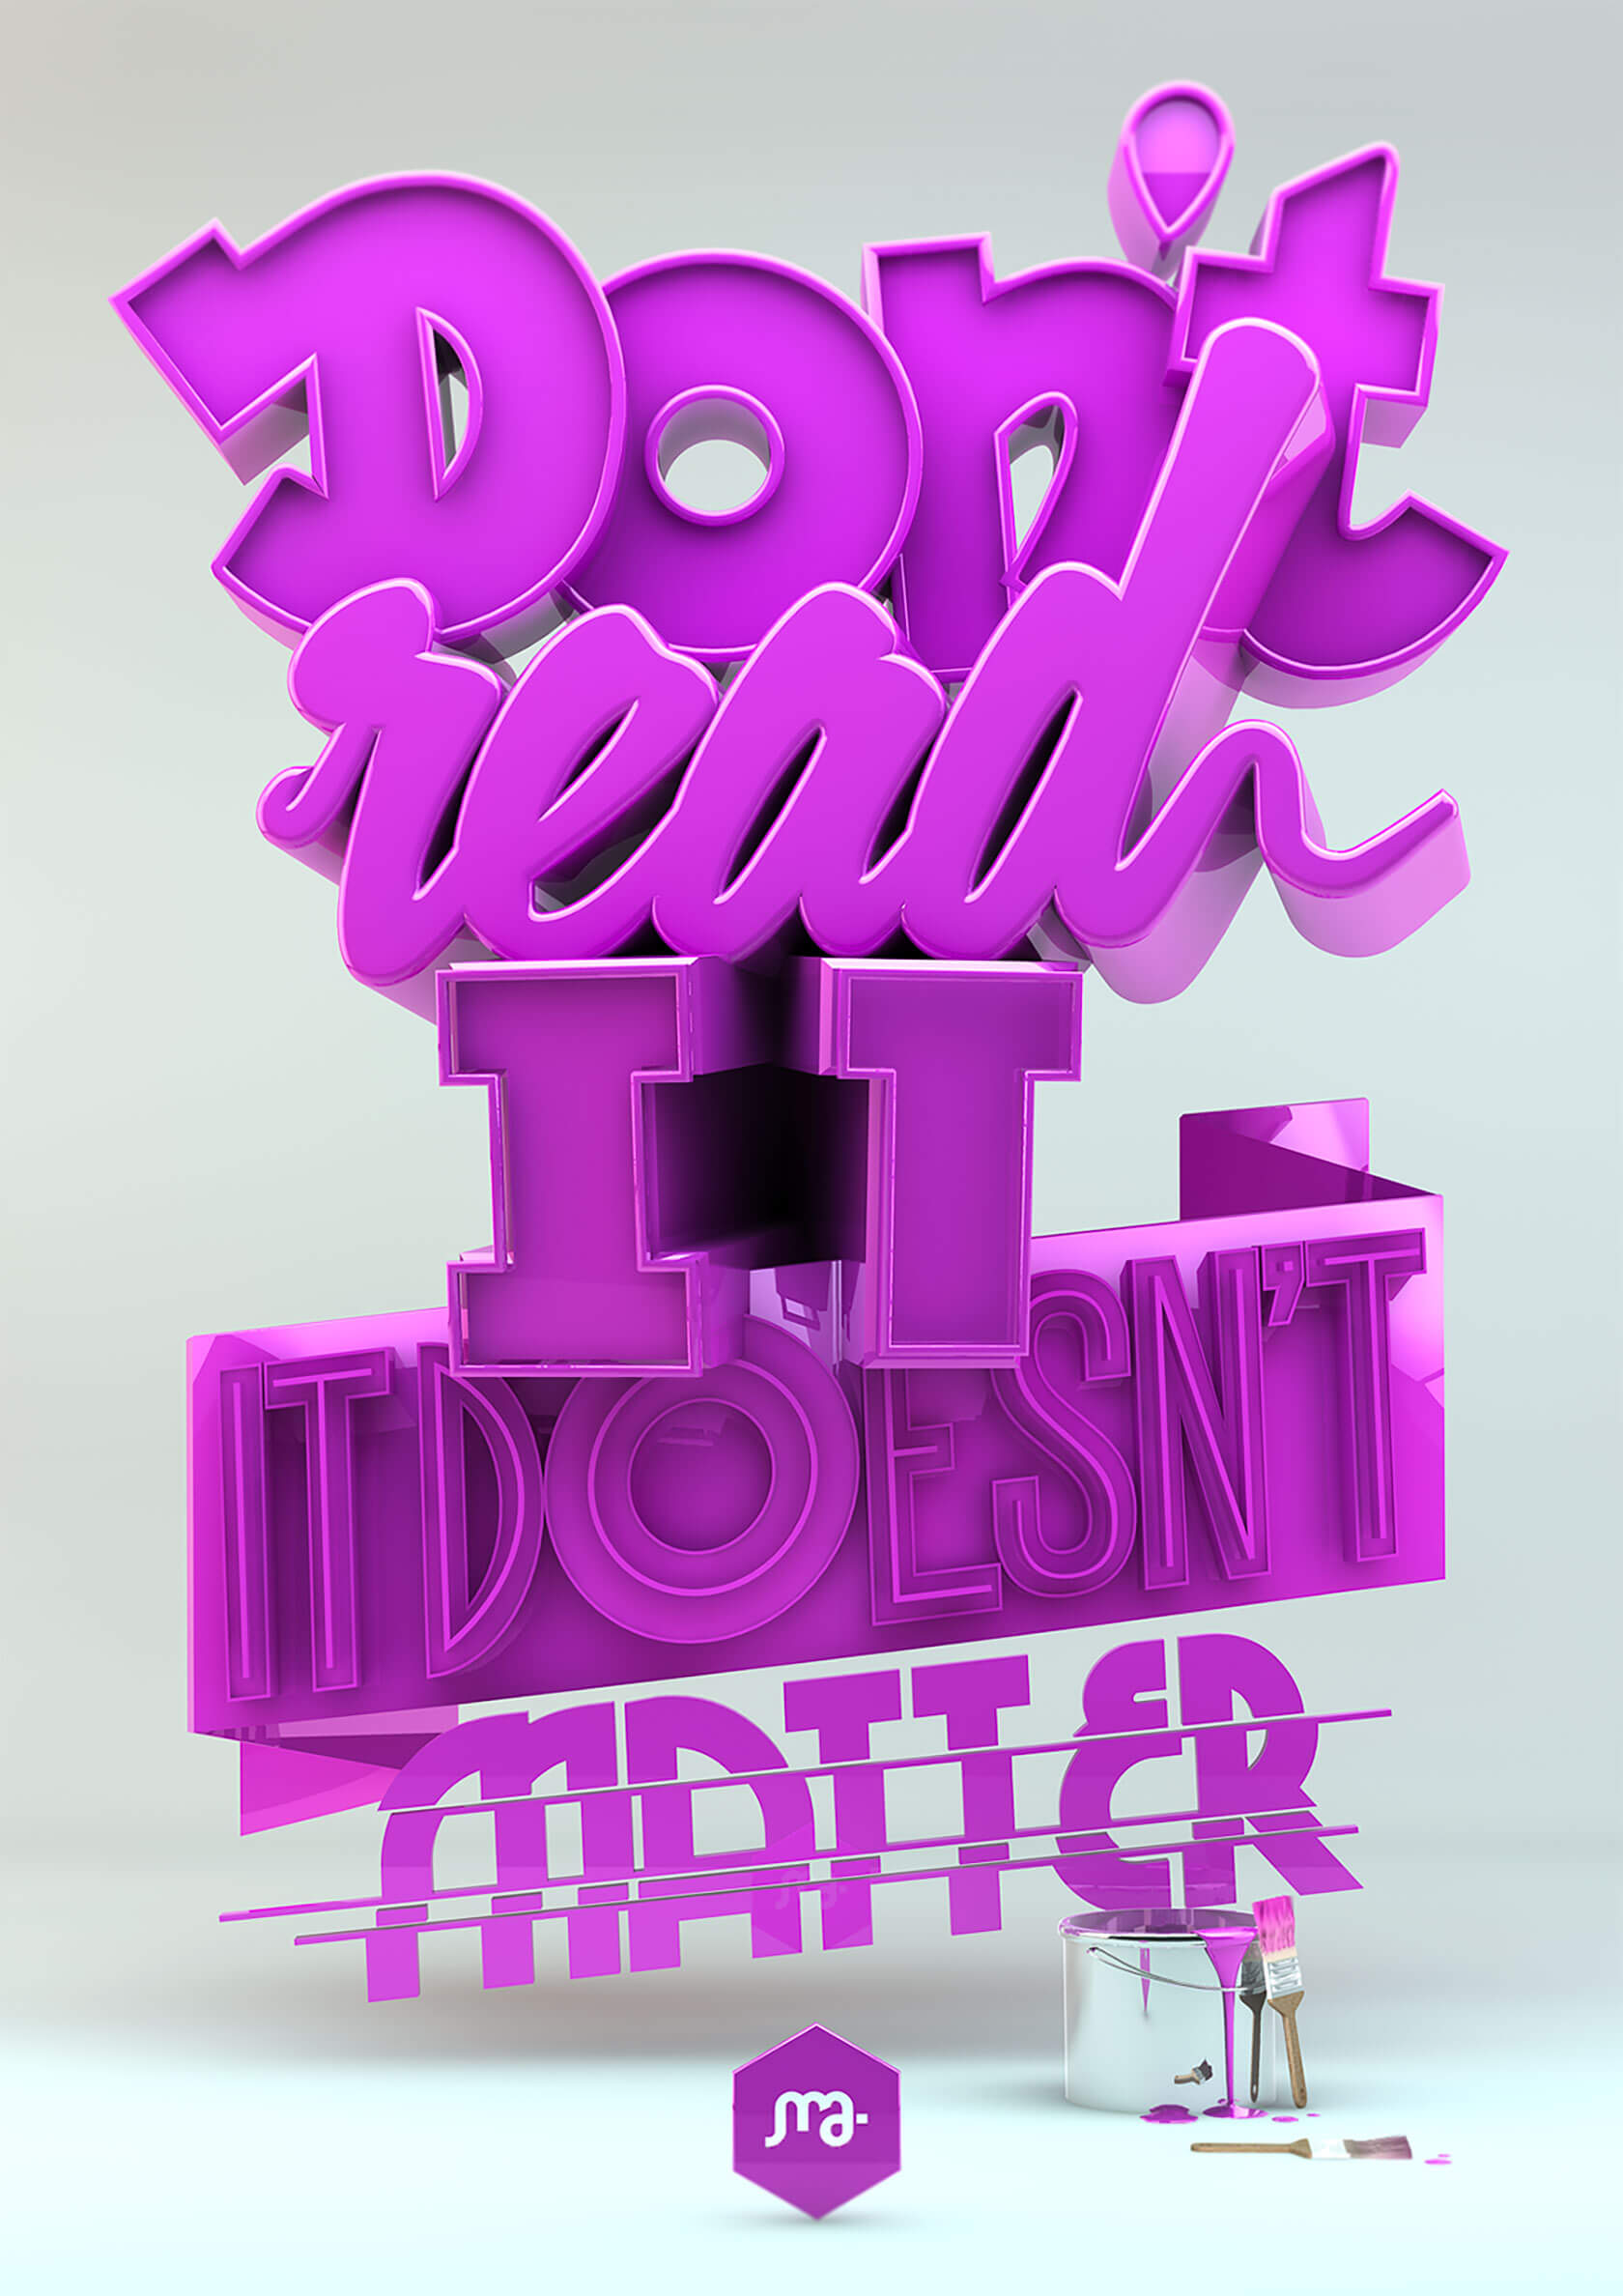 Marc Urtasun创意的3D字体设计